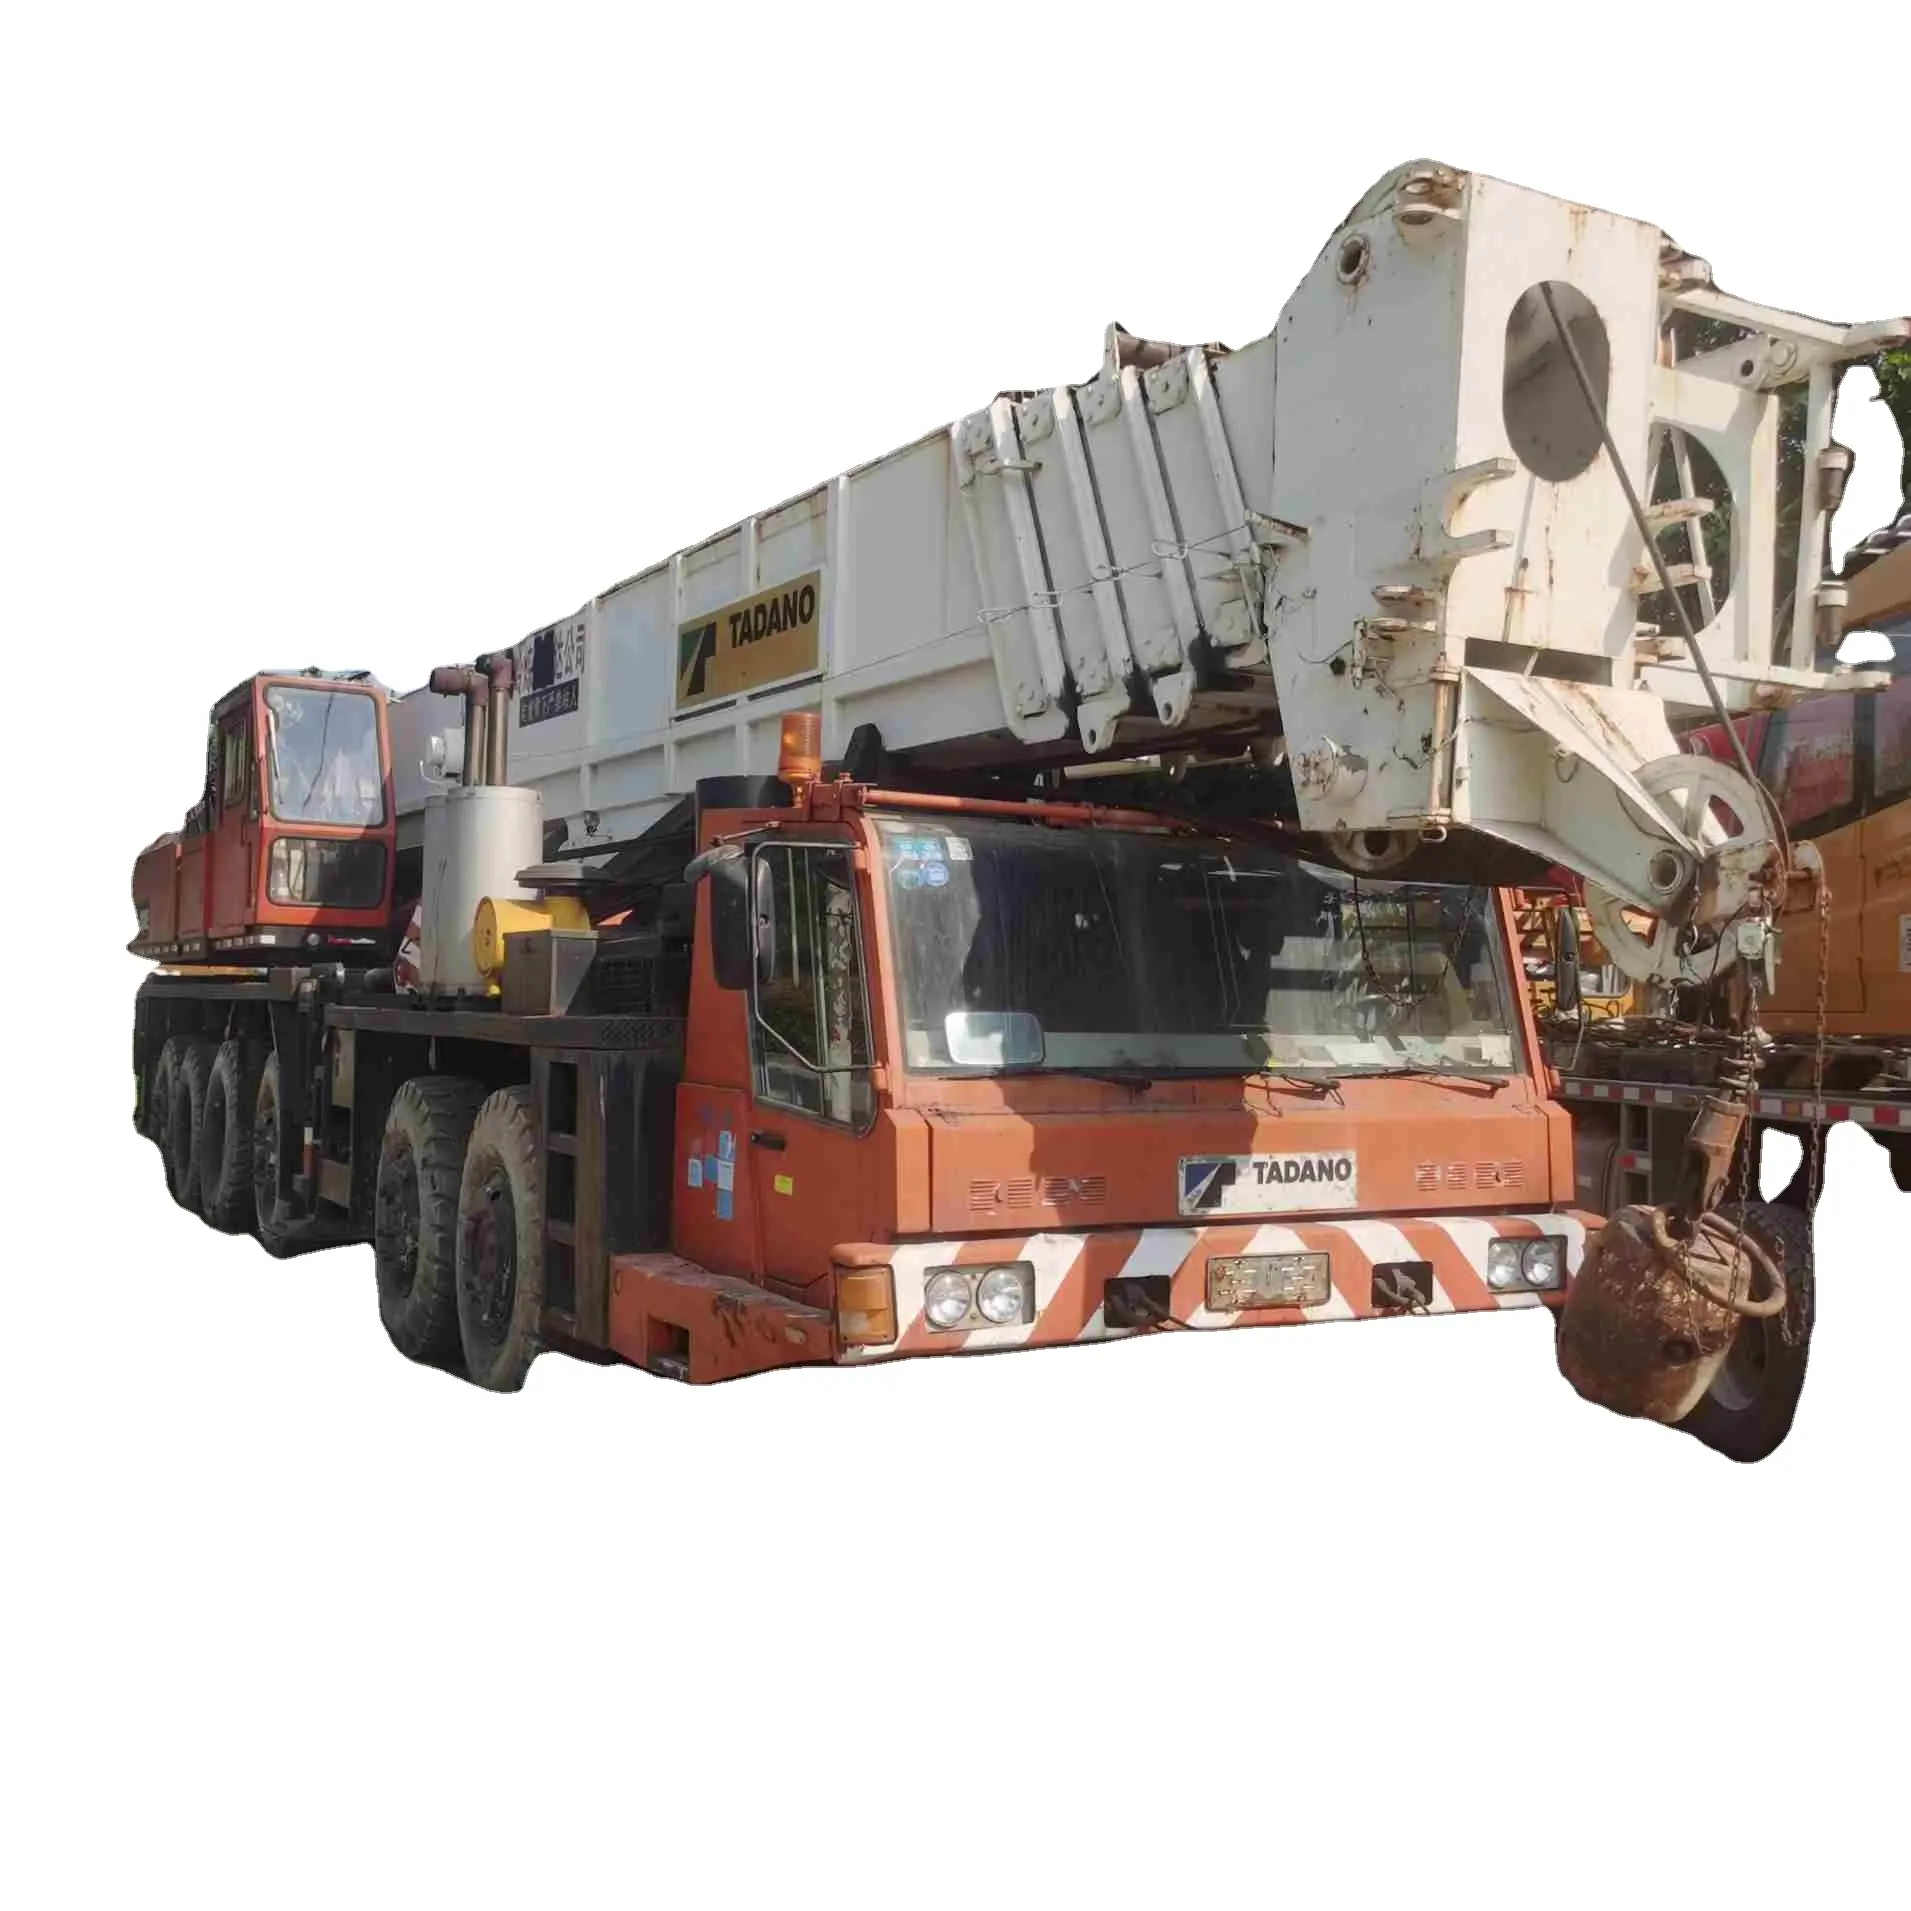 Grue de camion tdano 150 tonnes d'occasion, grue de camion 150 tonnes à vendre